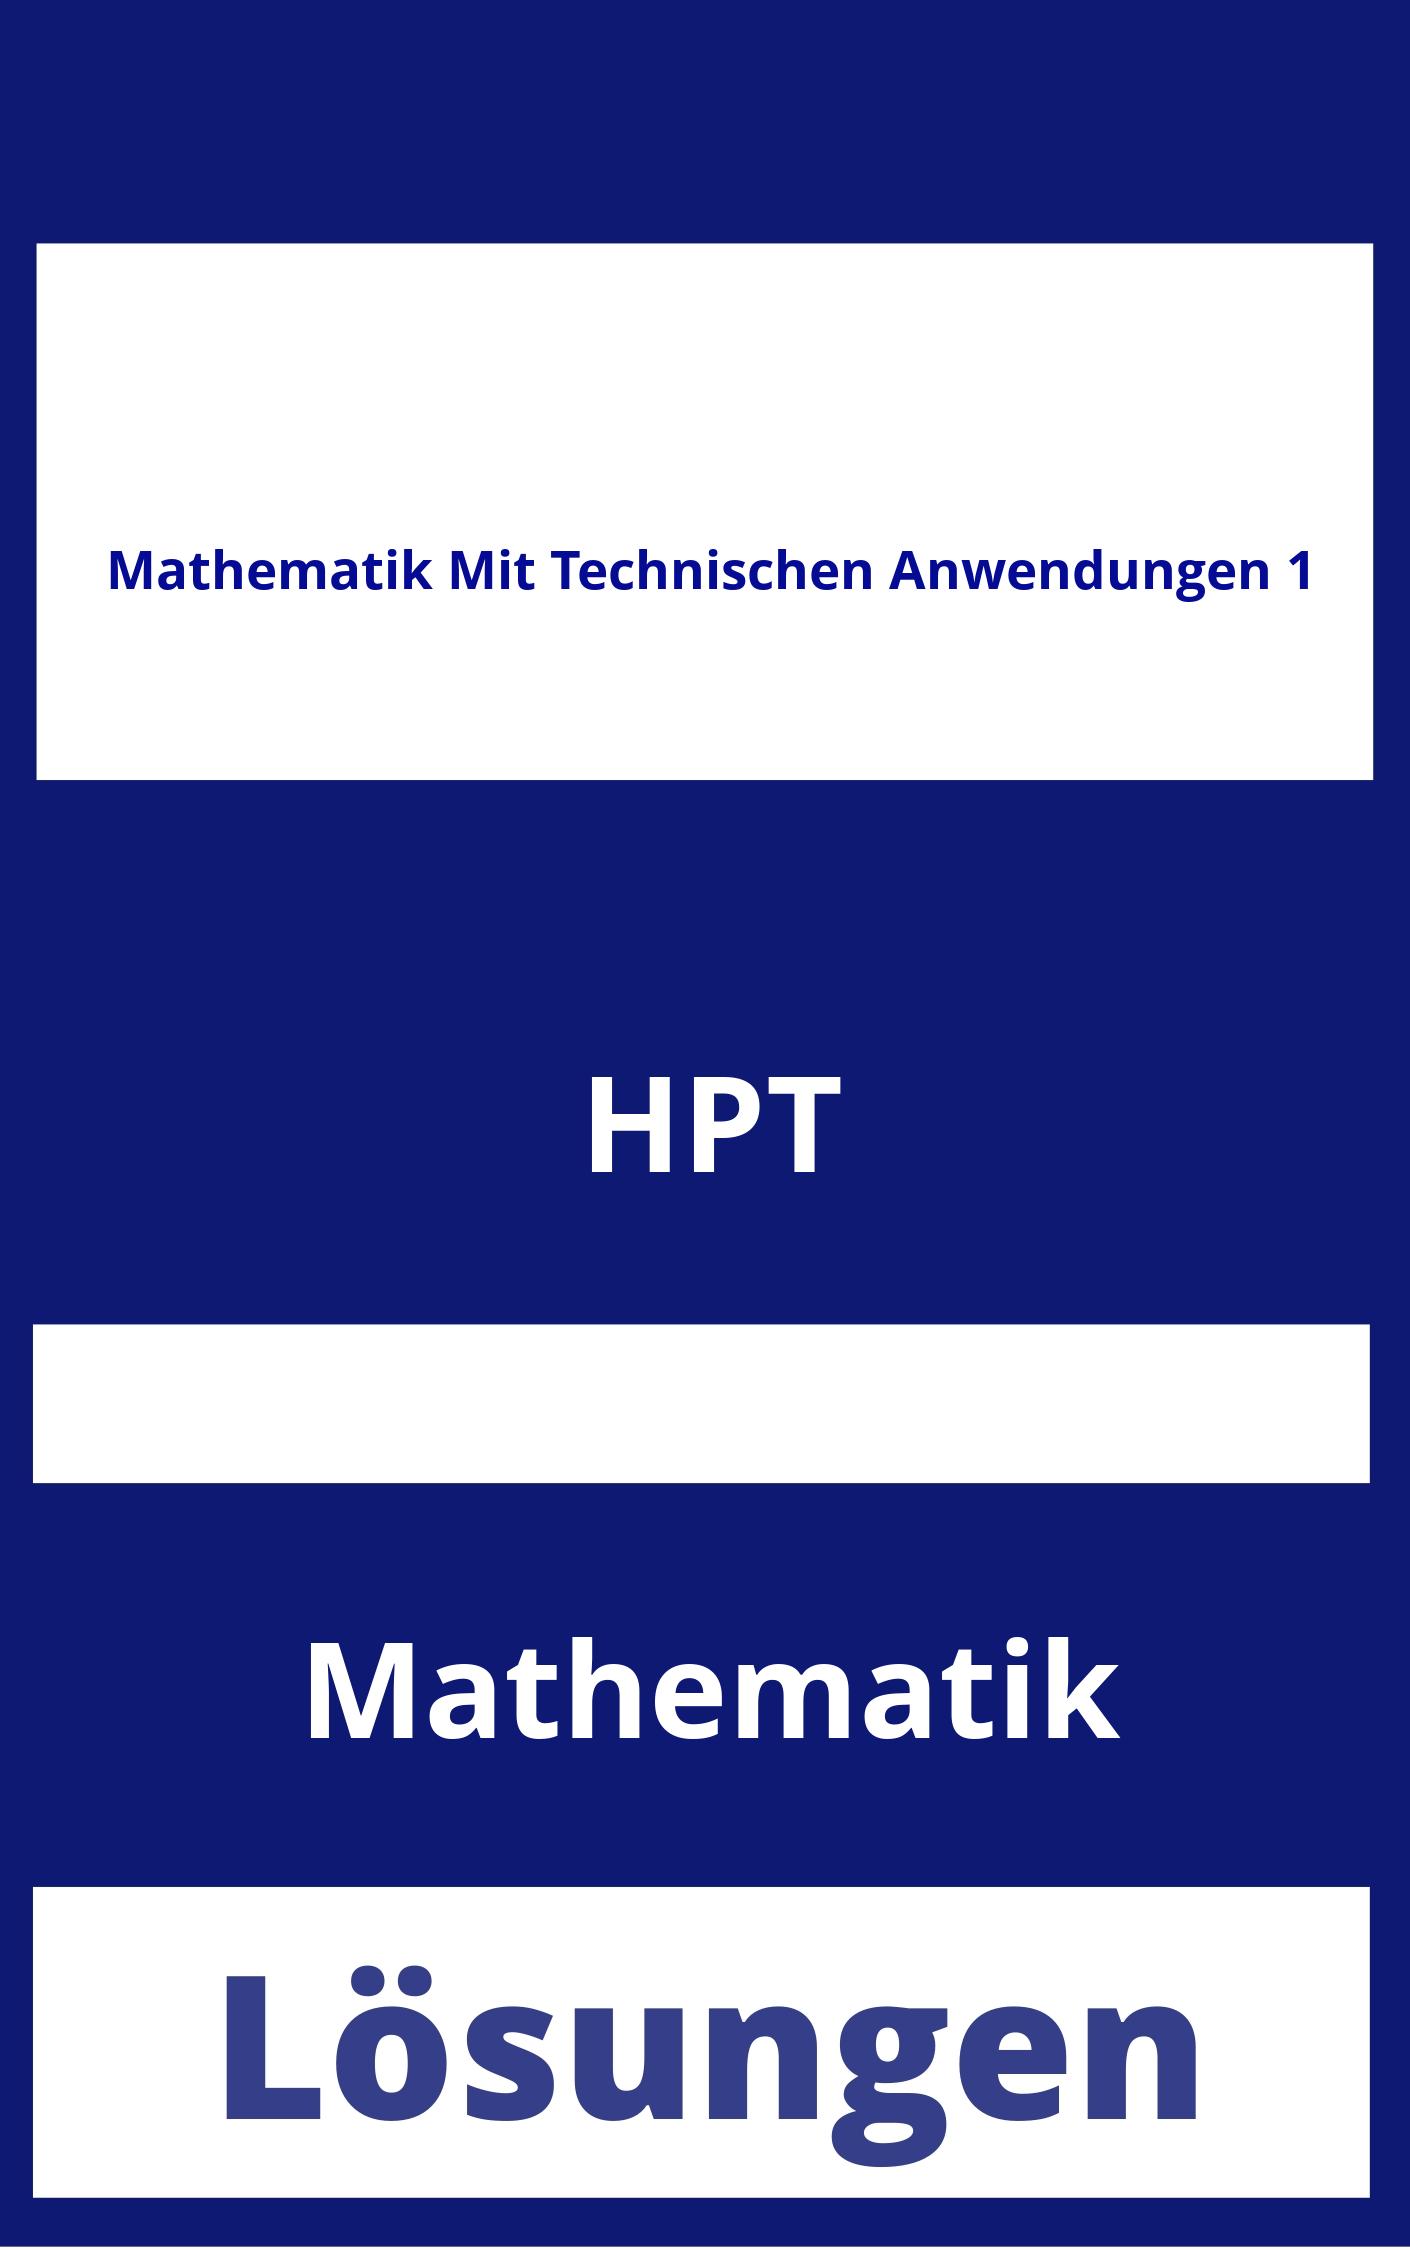 Mathematik Mit Technischen Anwendungen 1 Lösungen PDF